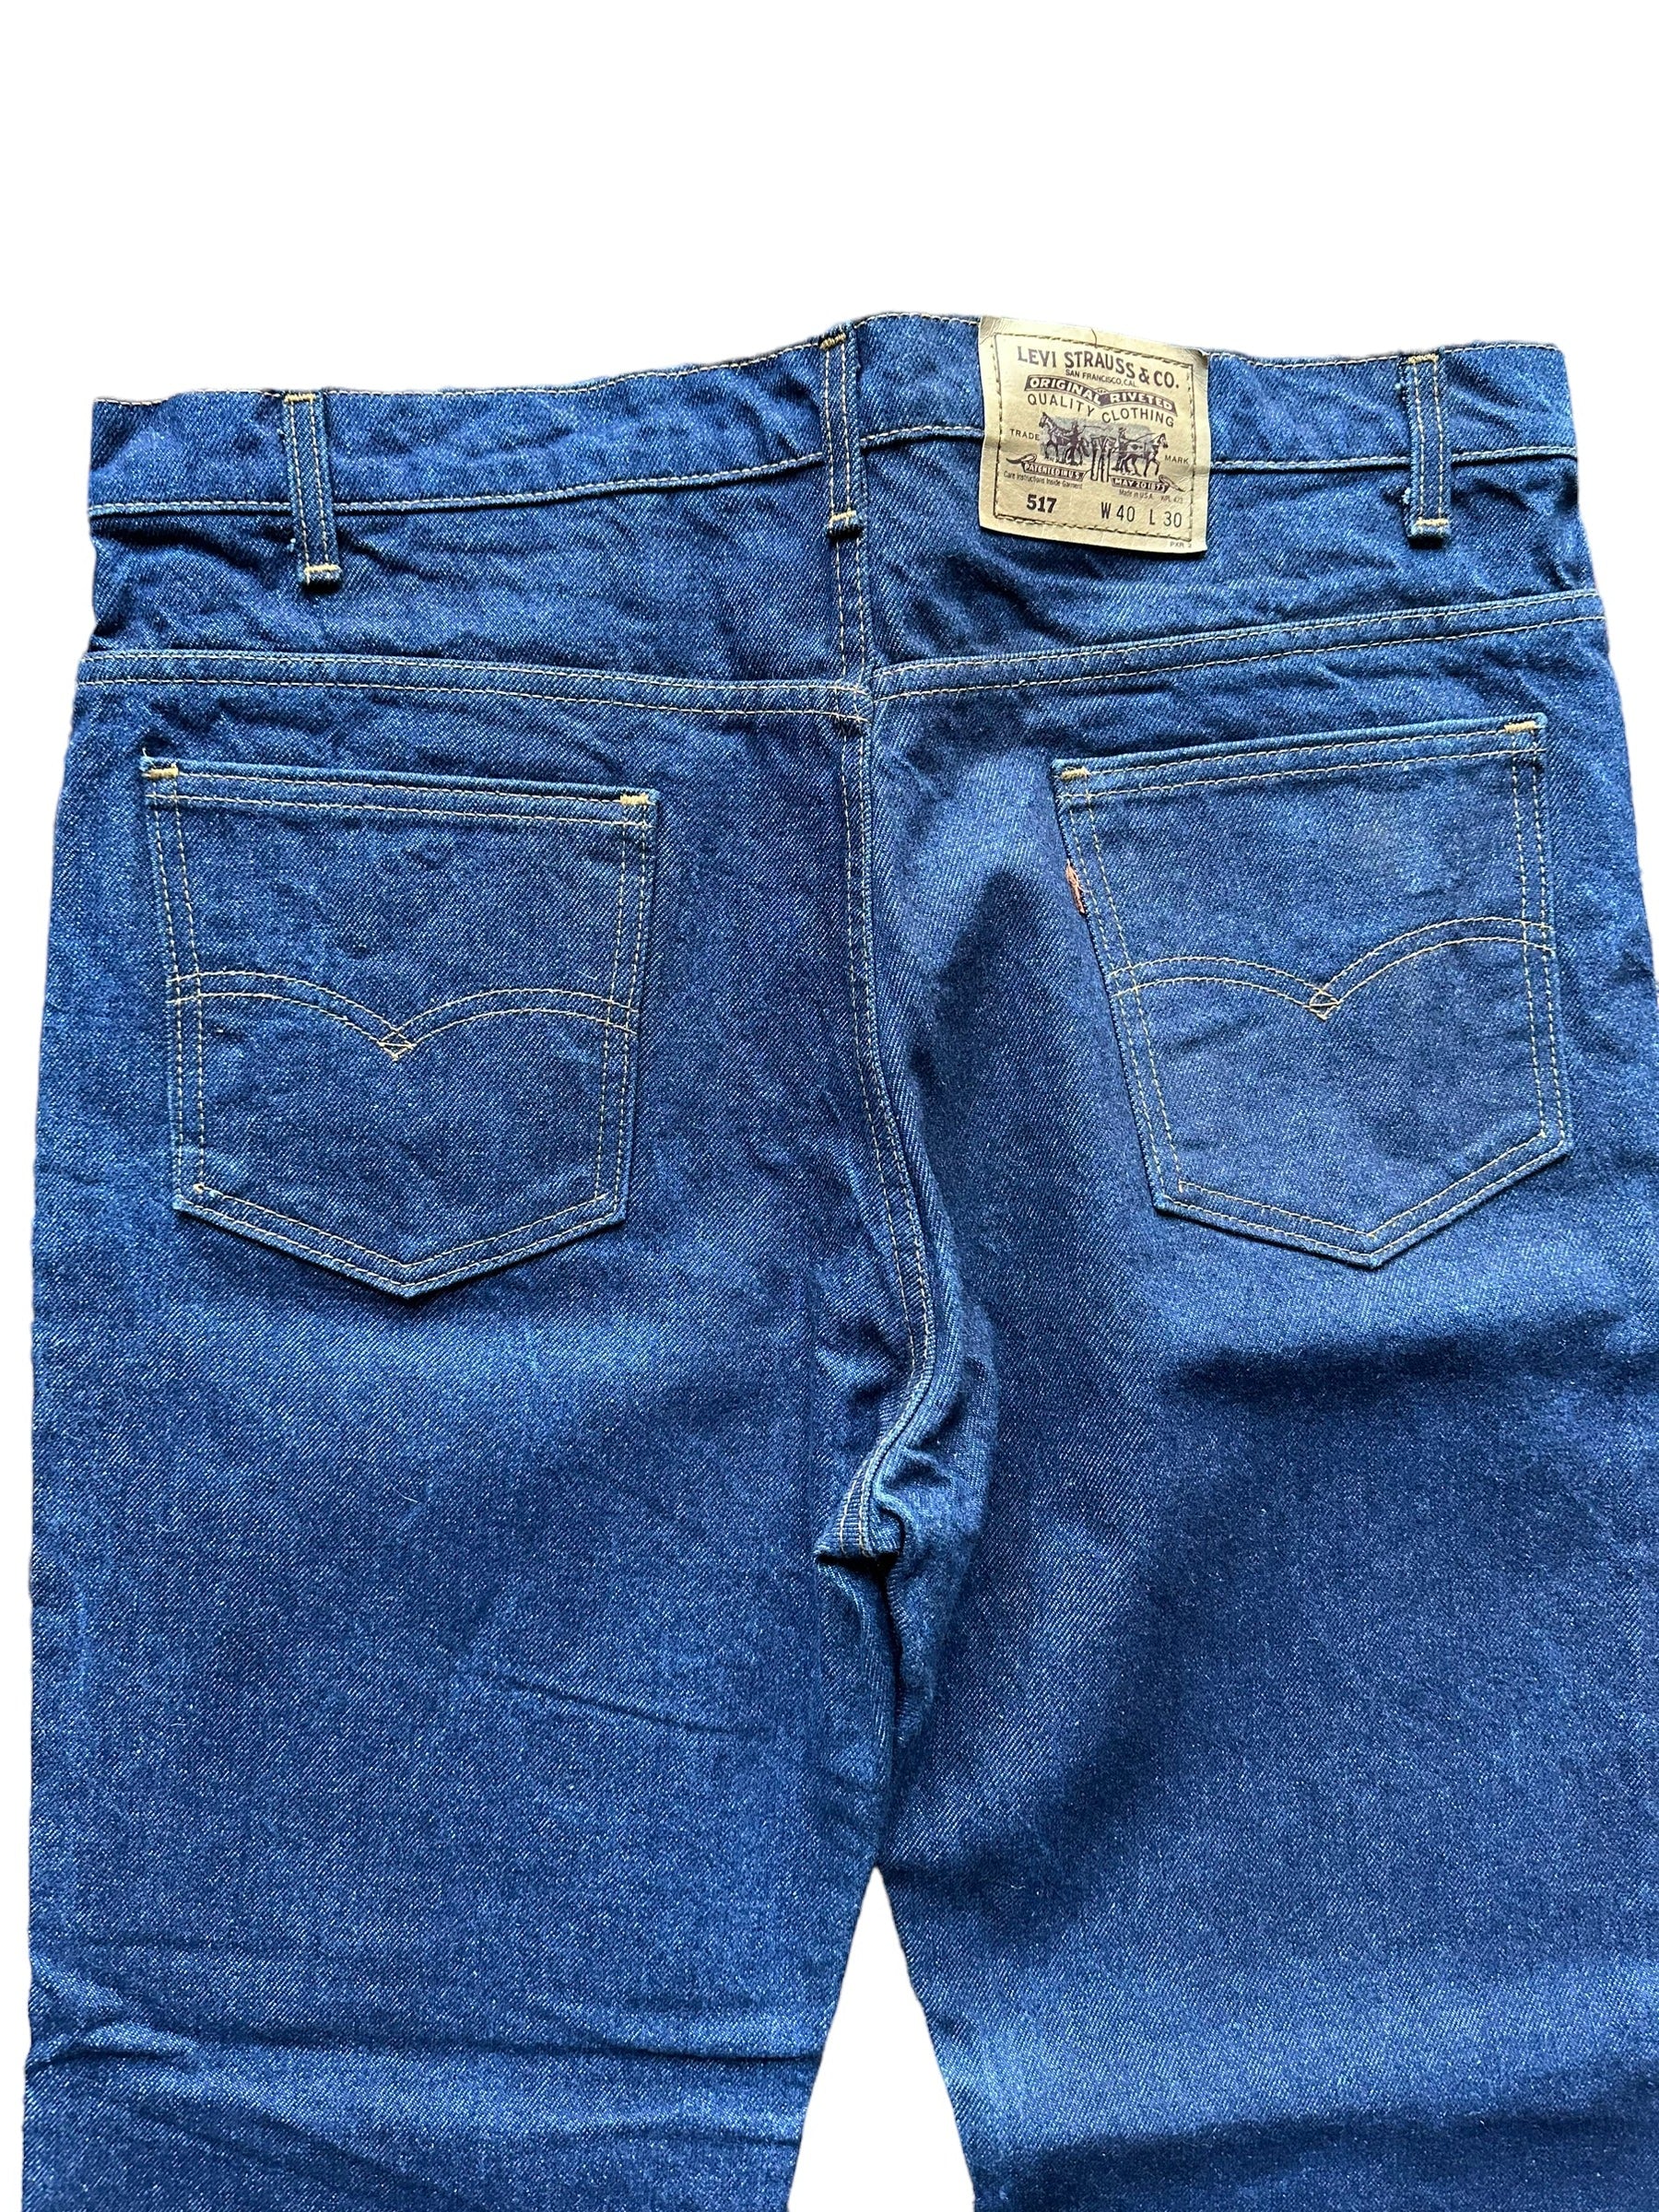 MEN'S JEANS, 2 pairs, corduple/denim, Levis/Diesel, unused. Vintage  Clothing & Accessories - Auctionet